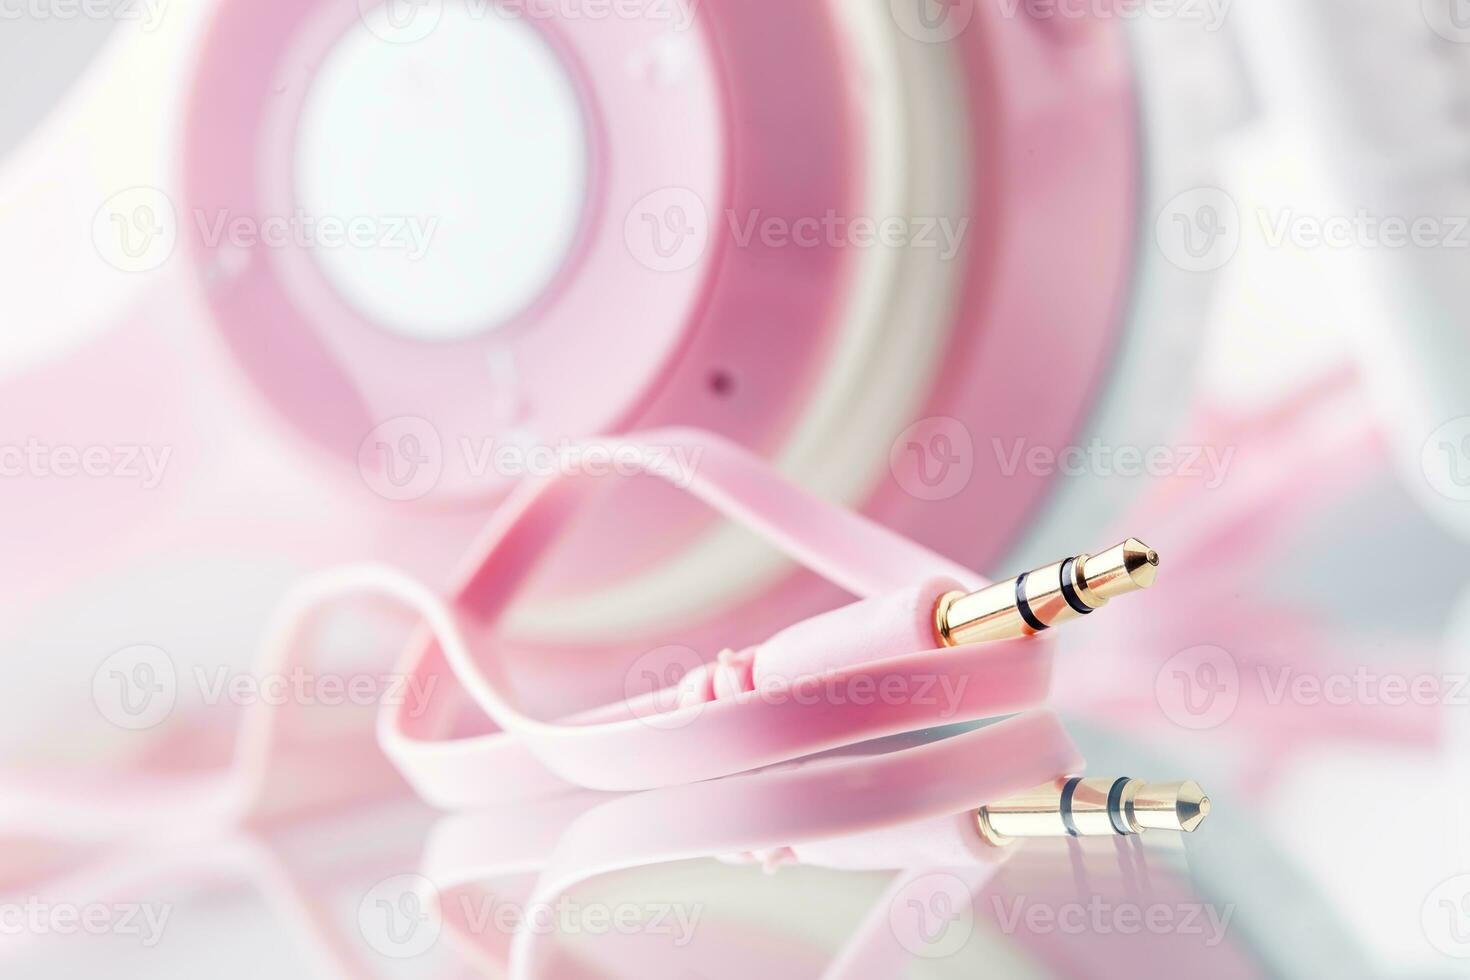 auriculares. rosado auriculares con Jack conector - espejo reflexión foto